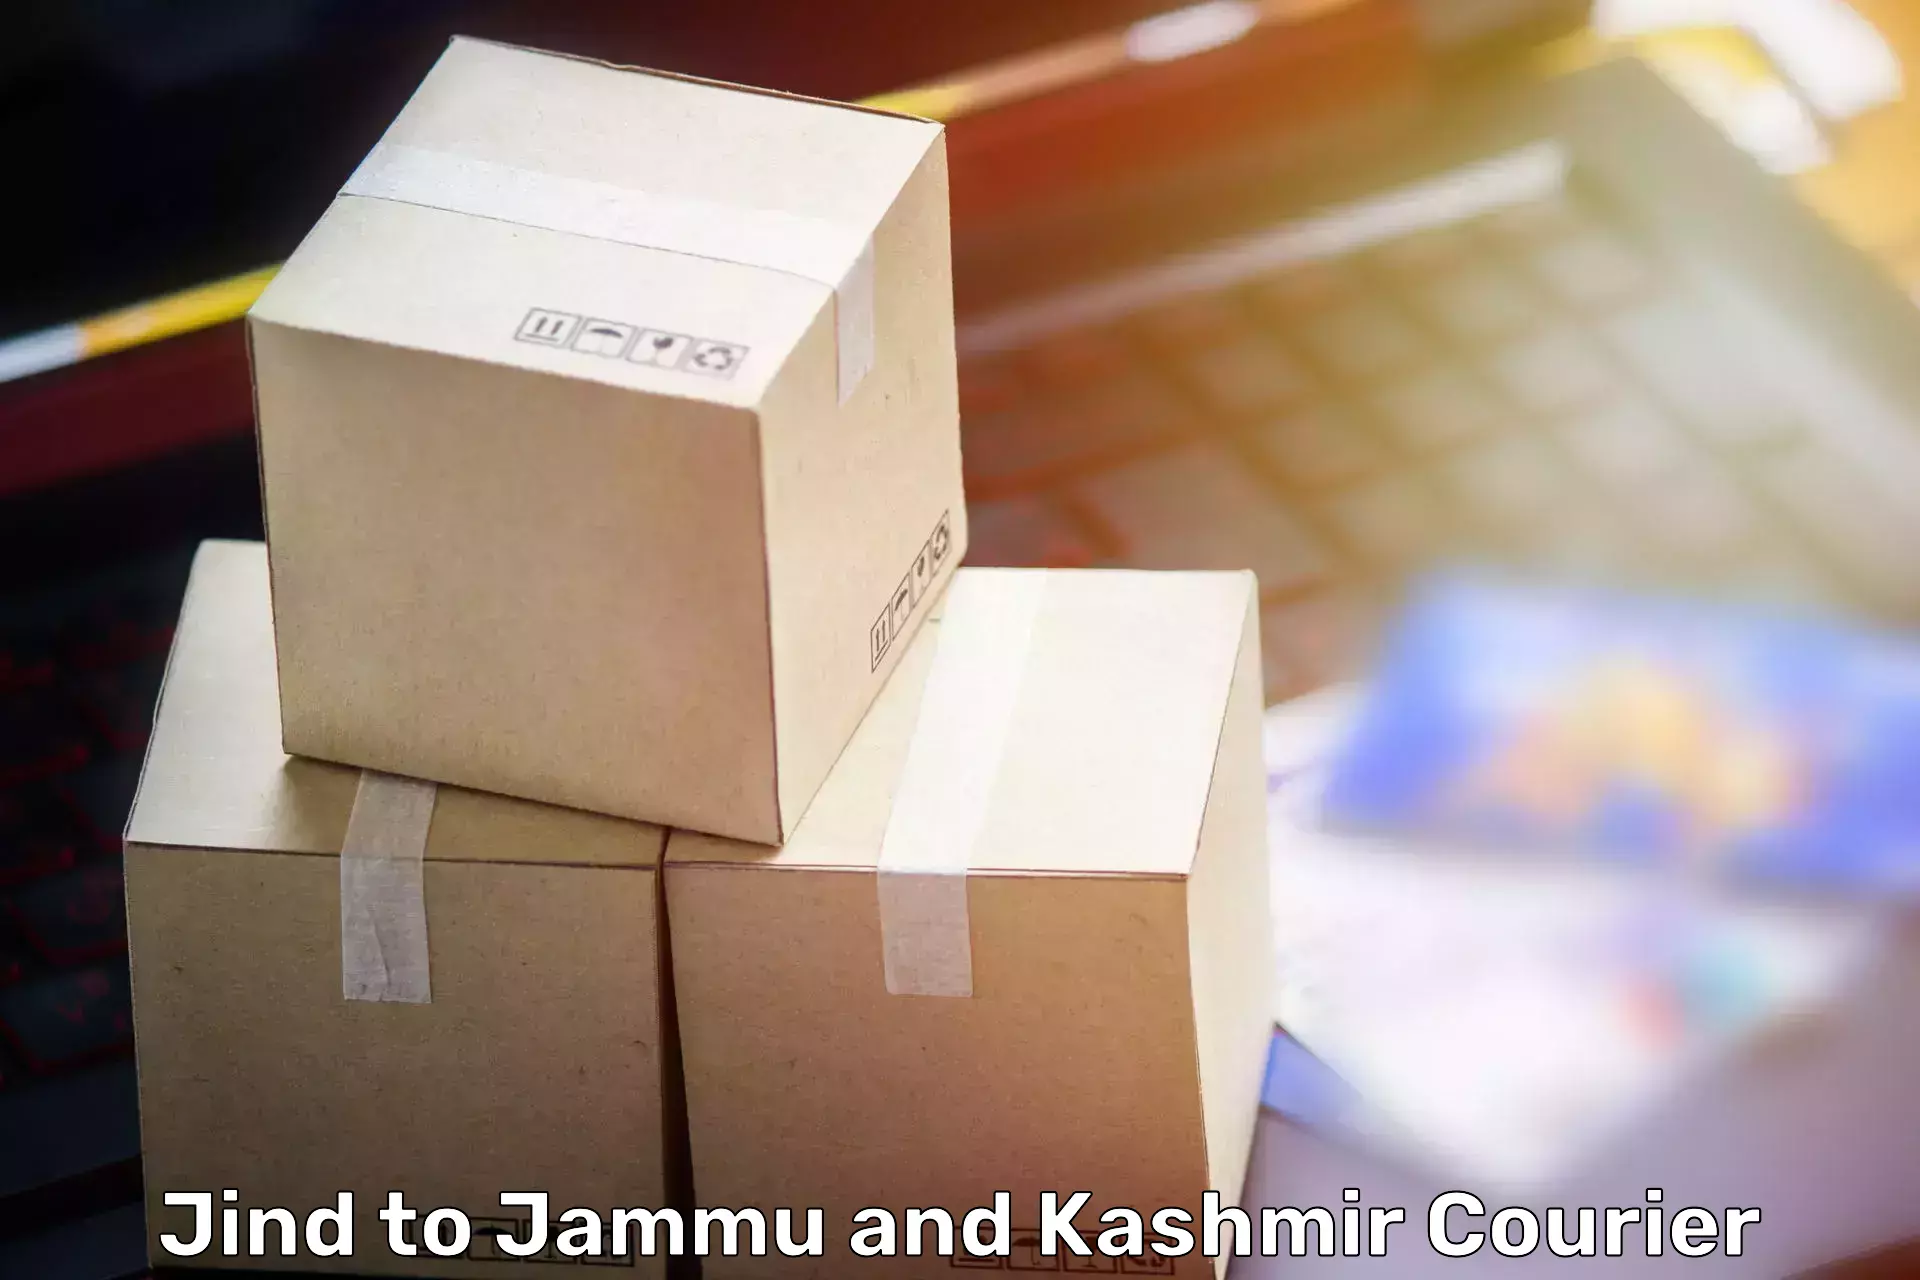 Moving and handling services Jind to Srinagar Kashmir